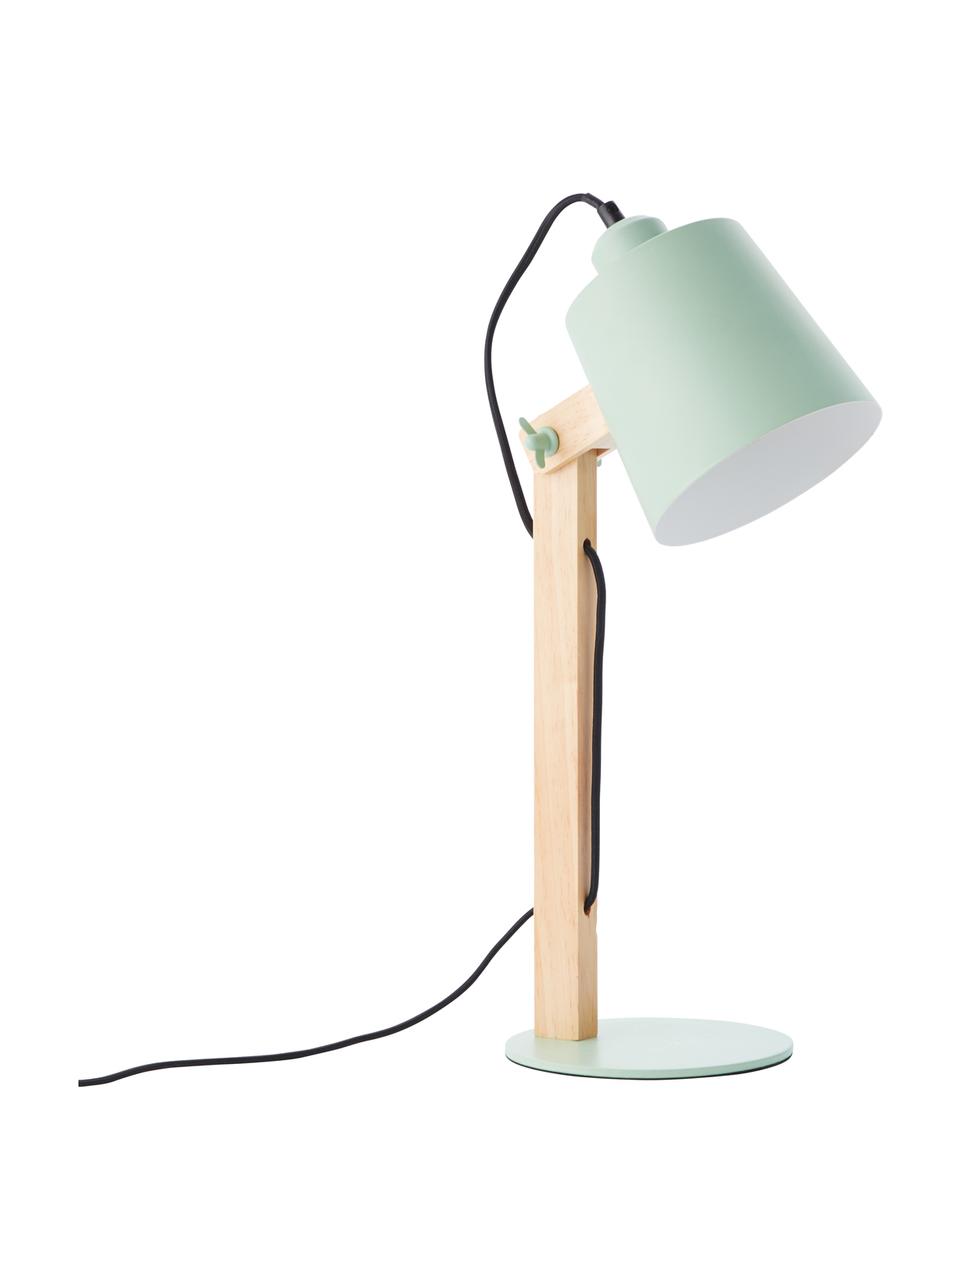 Grote bureaulamp Swivel met houten voet, Lampenkap: metaal, Lampvoet: metaal, Mintgroen, hout, 16 x 52 cm